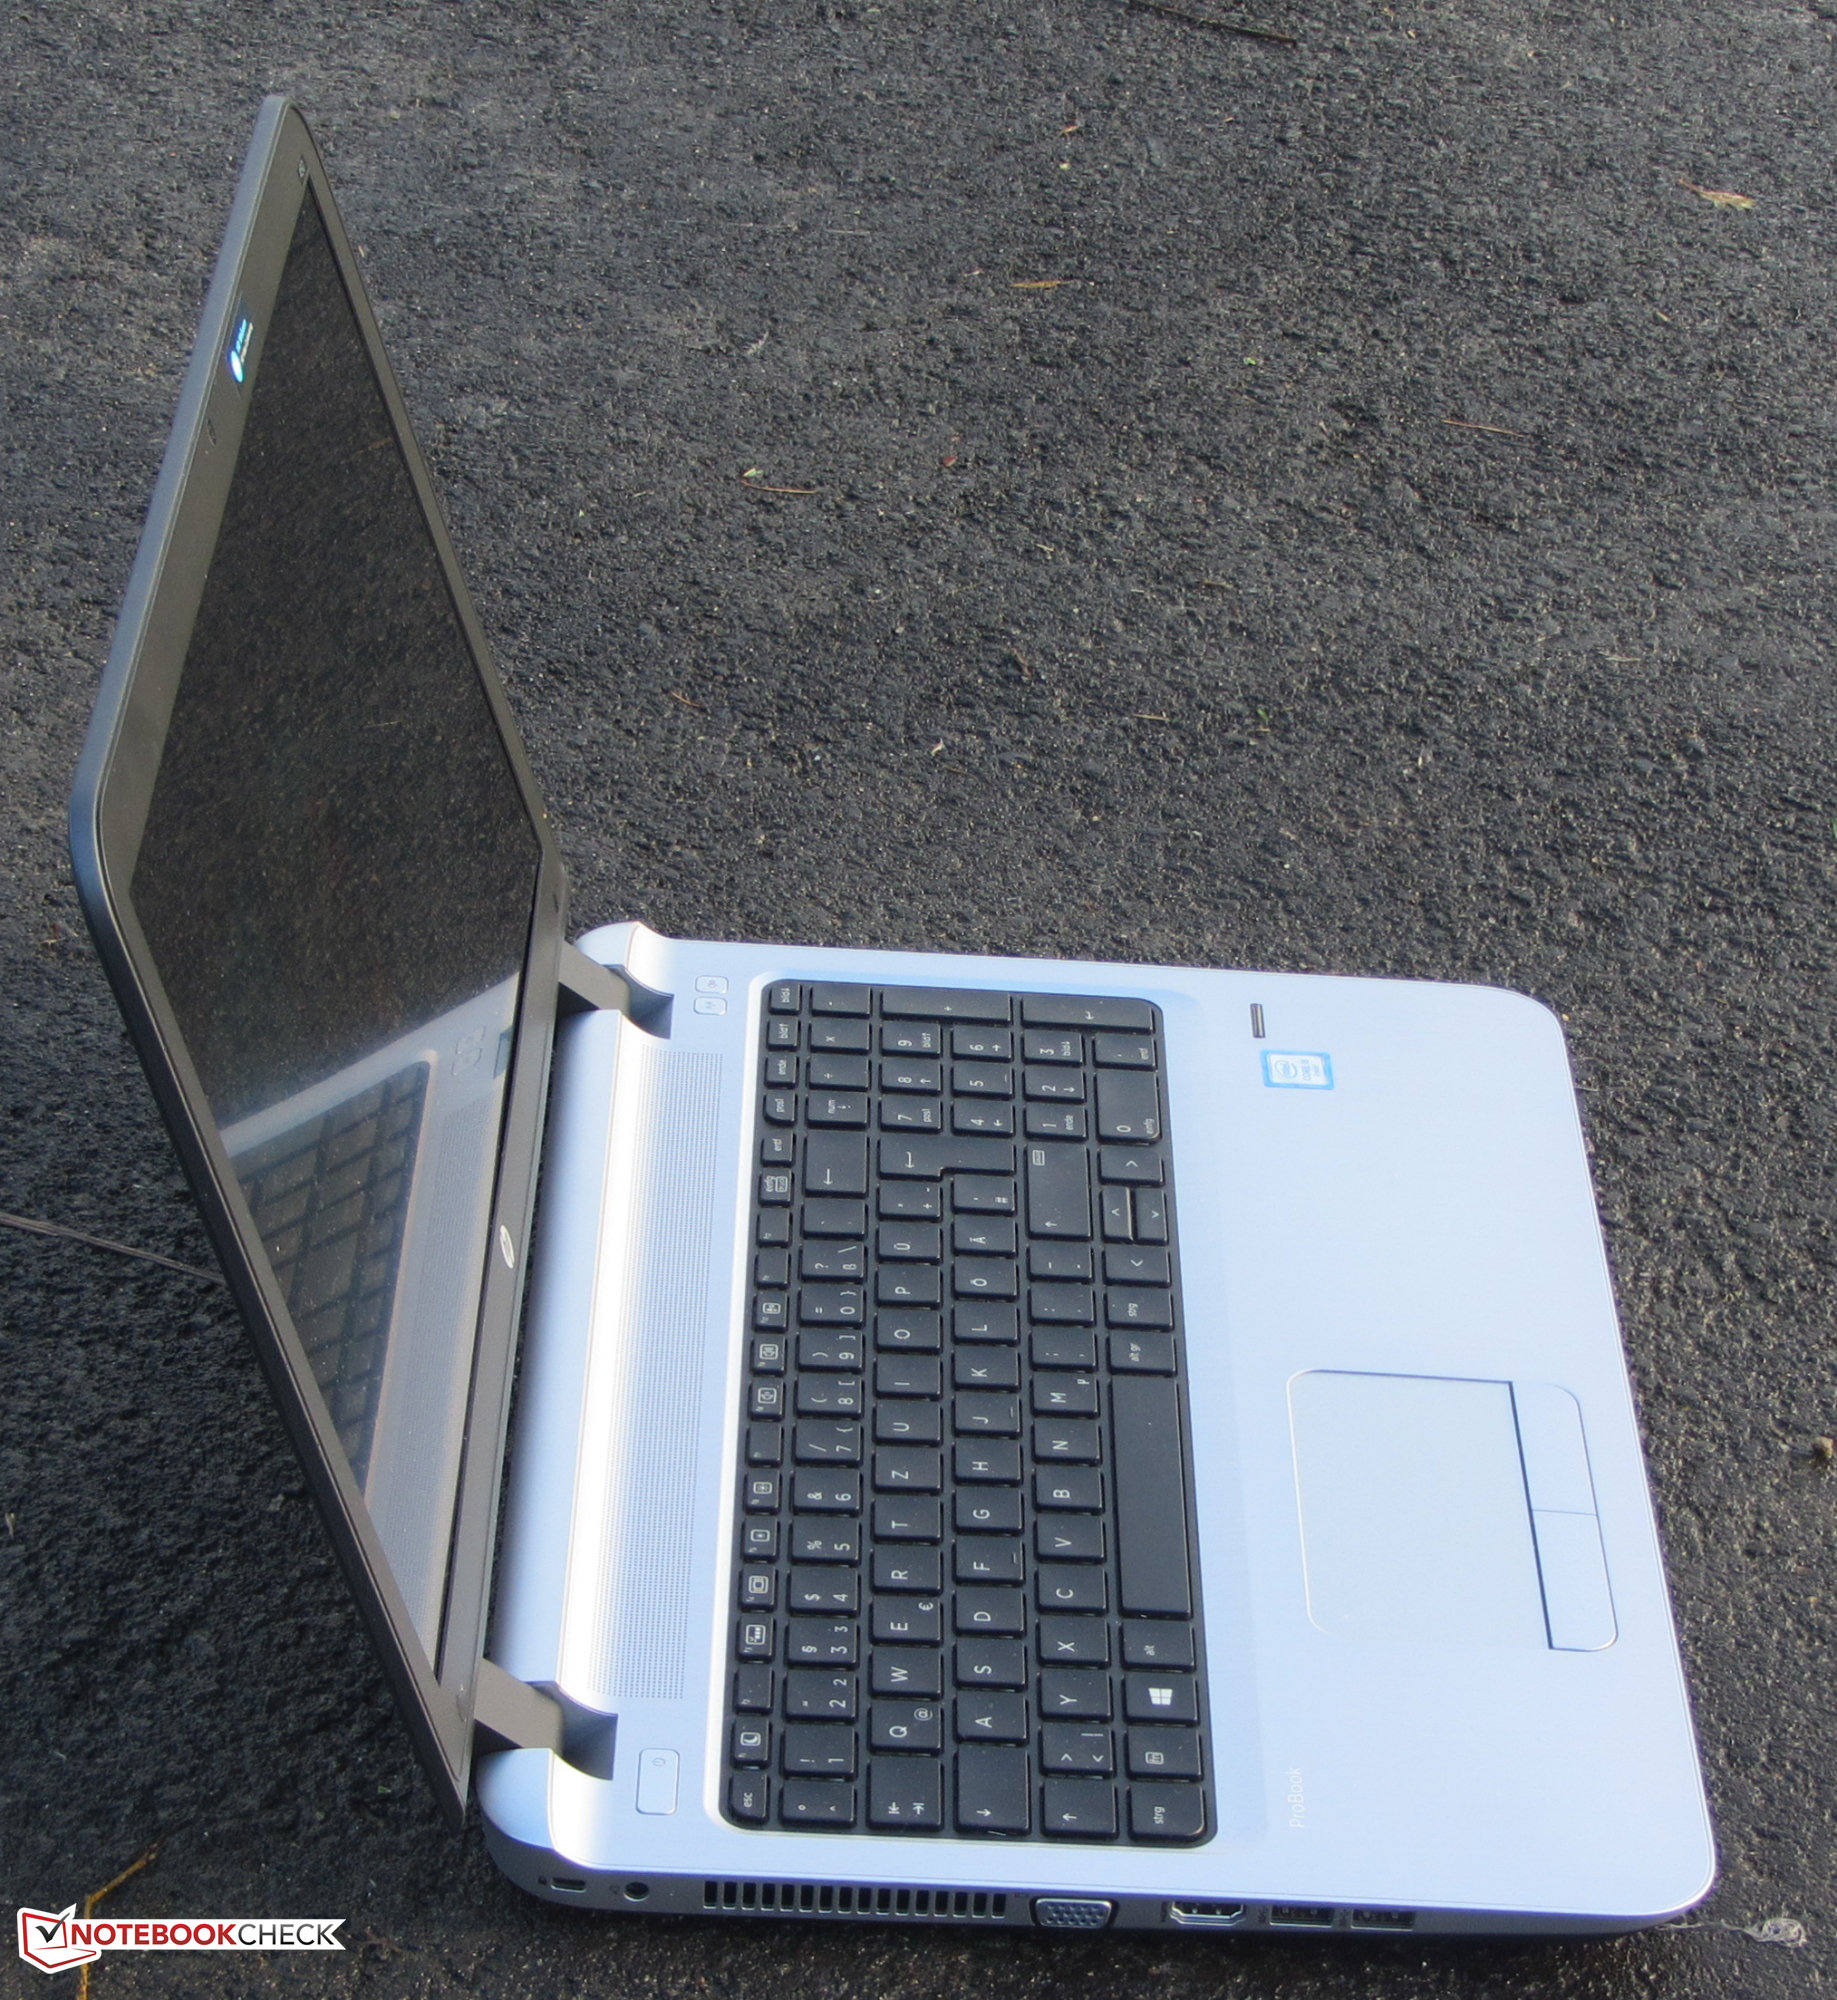 HP ProBook 450 G3 Notebook Review - NotebookCheck.net Reviews